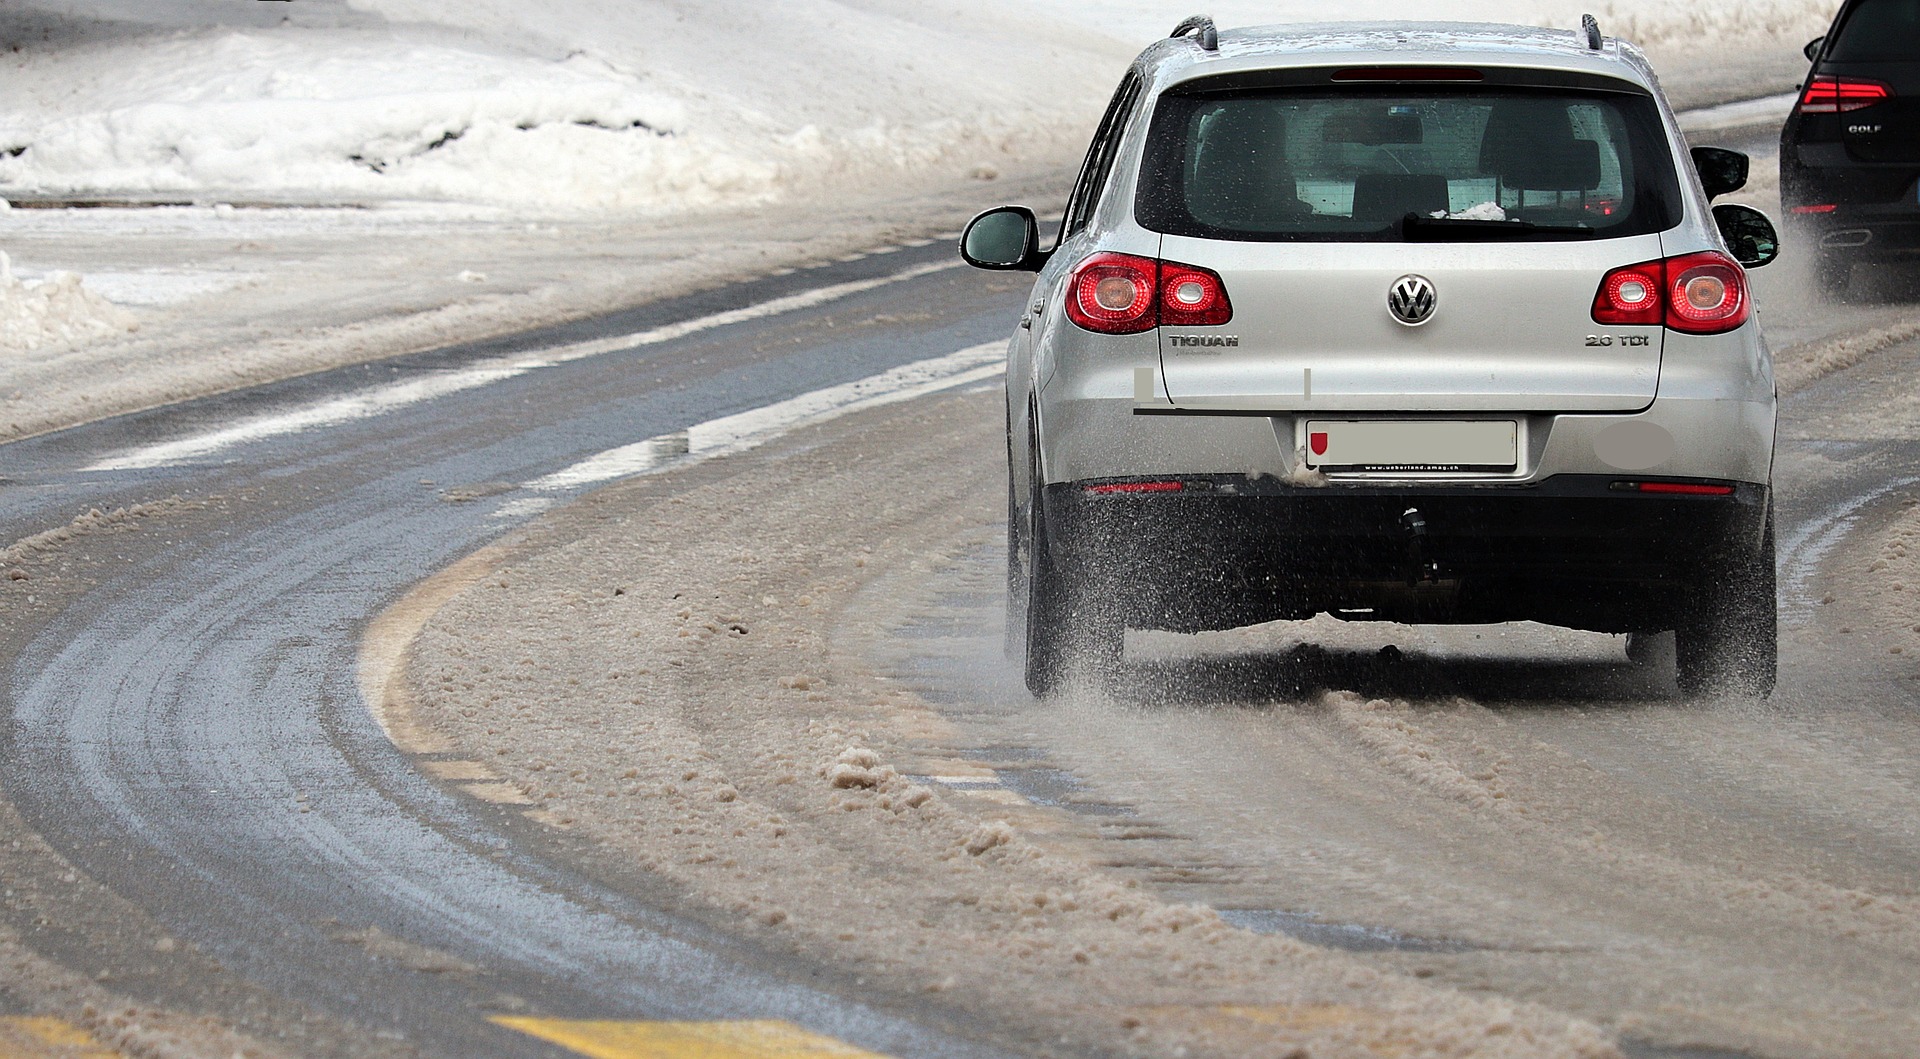 Zima zła, czyli co może dać się we znaki kierowcom?